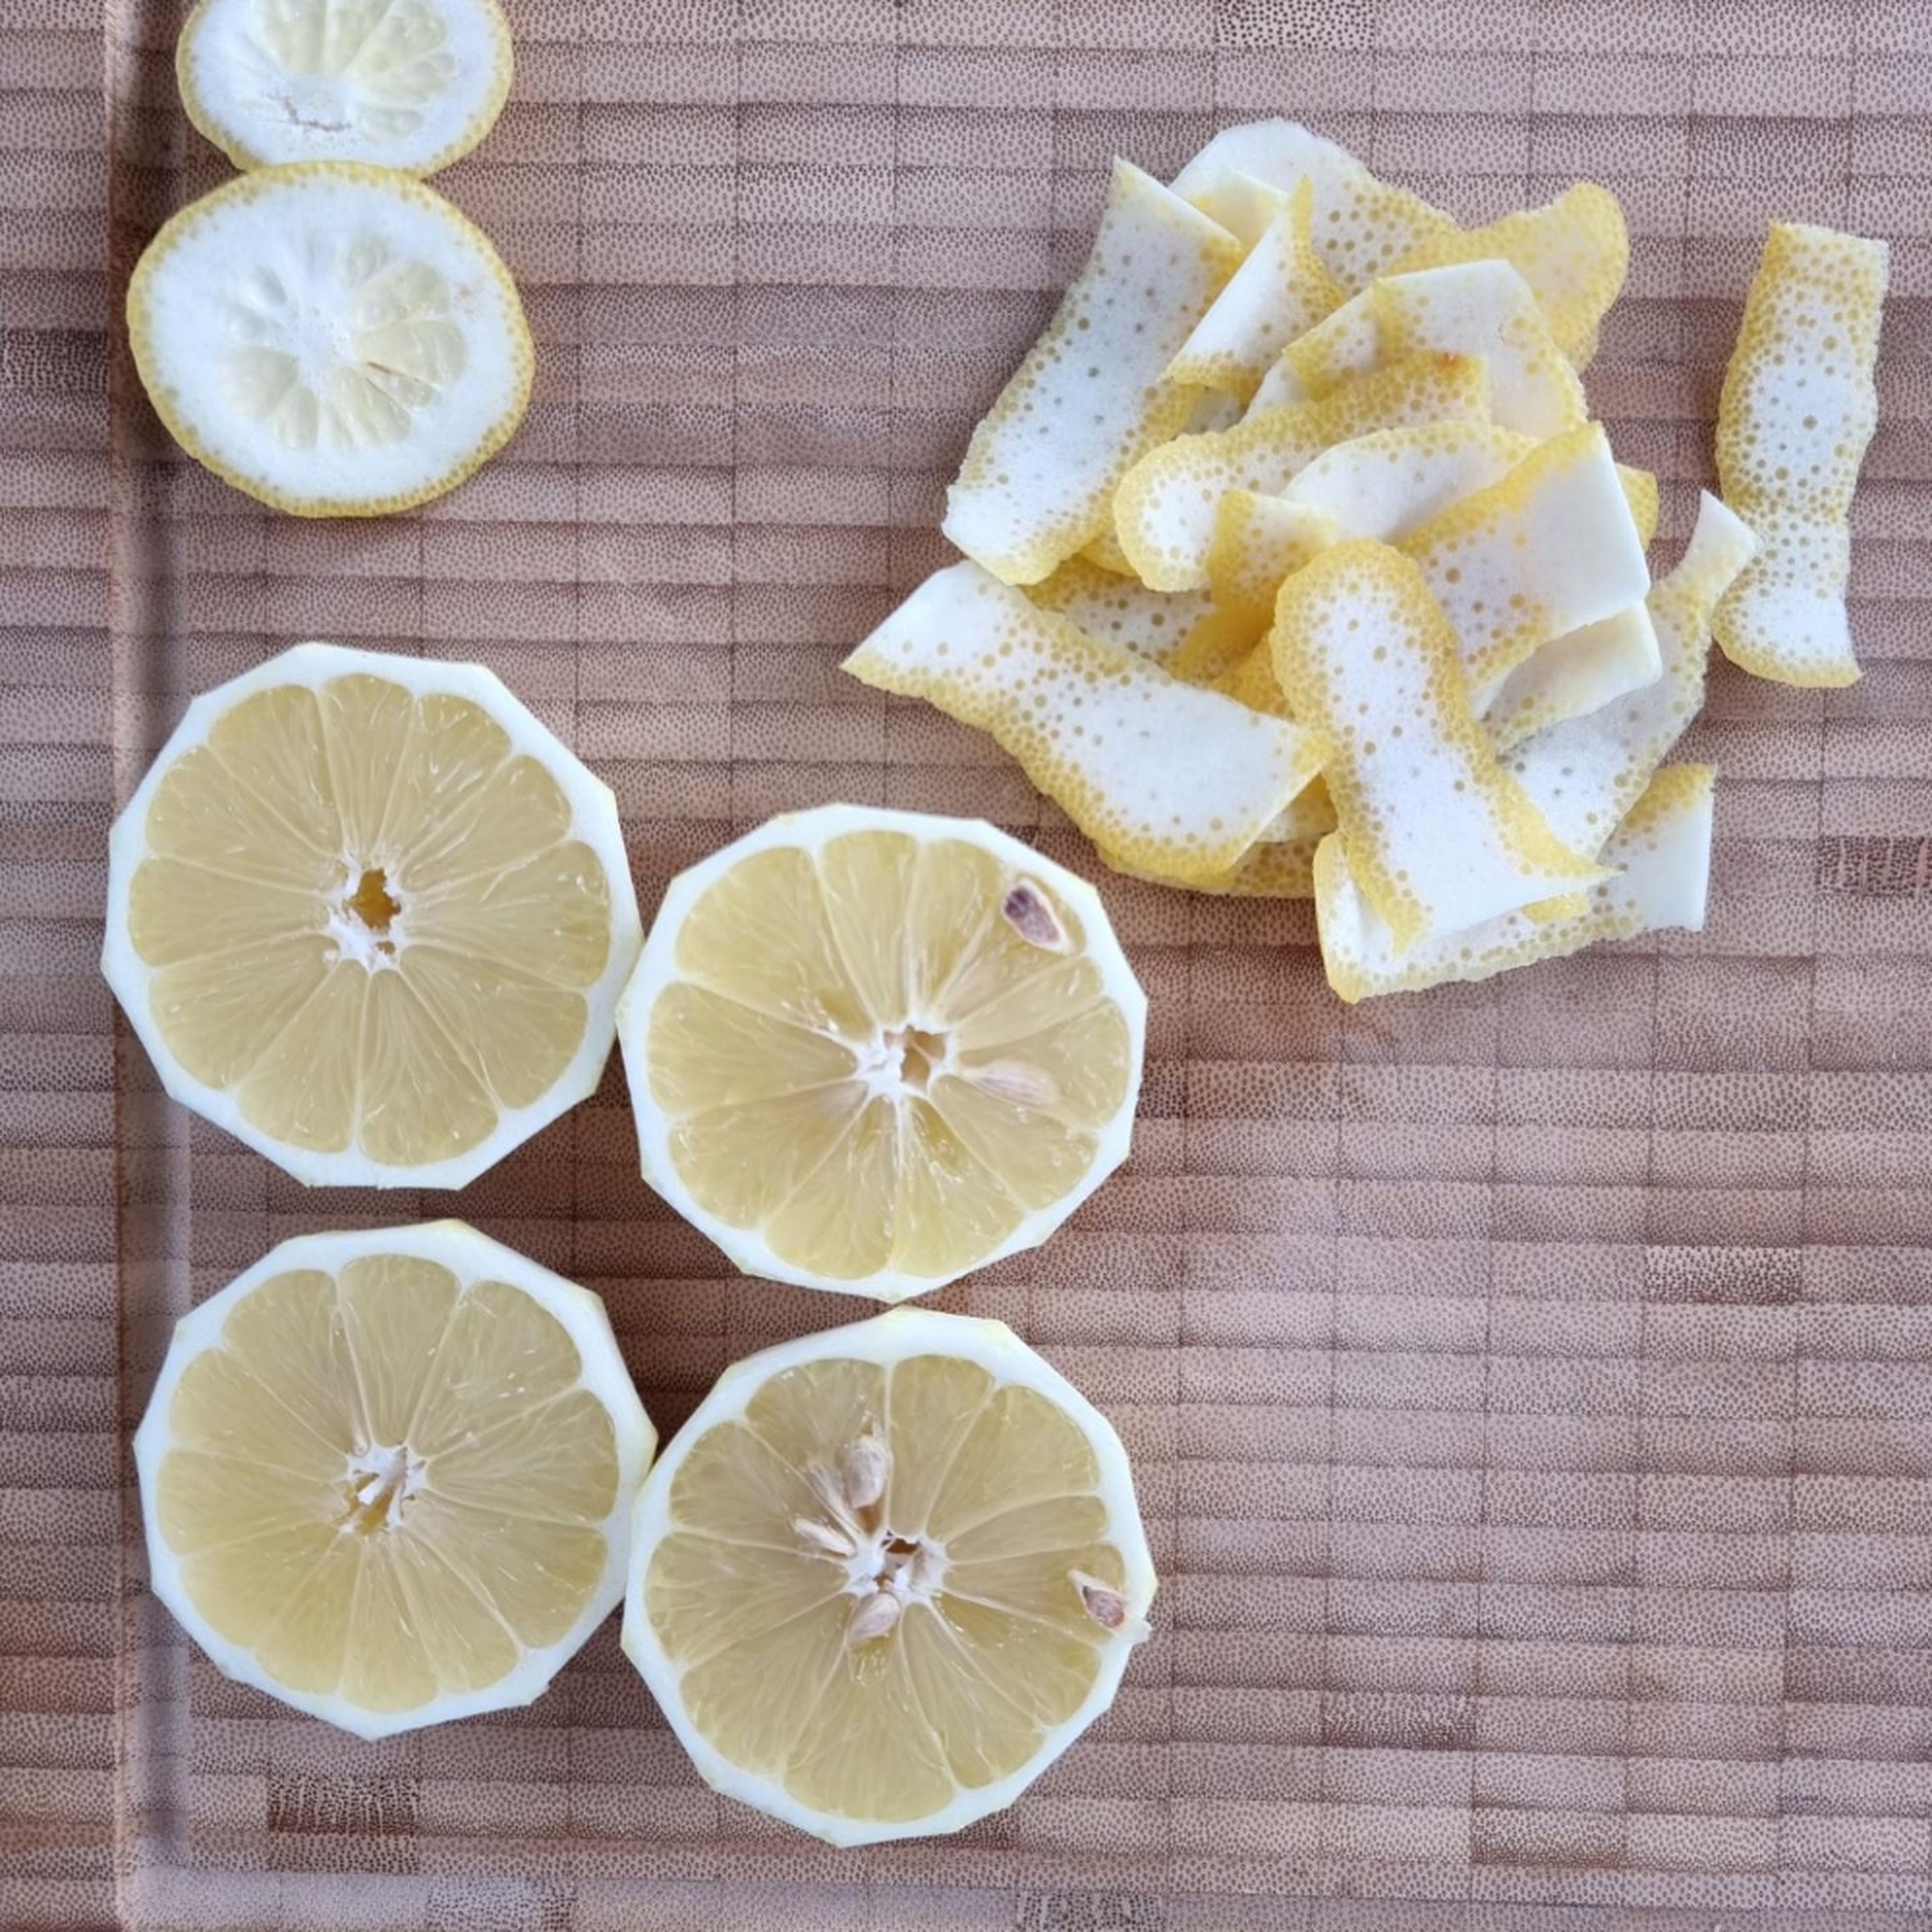 Von zwei Zitronen die Schale abschneiden und den Parmesan fein reiben.